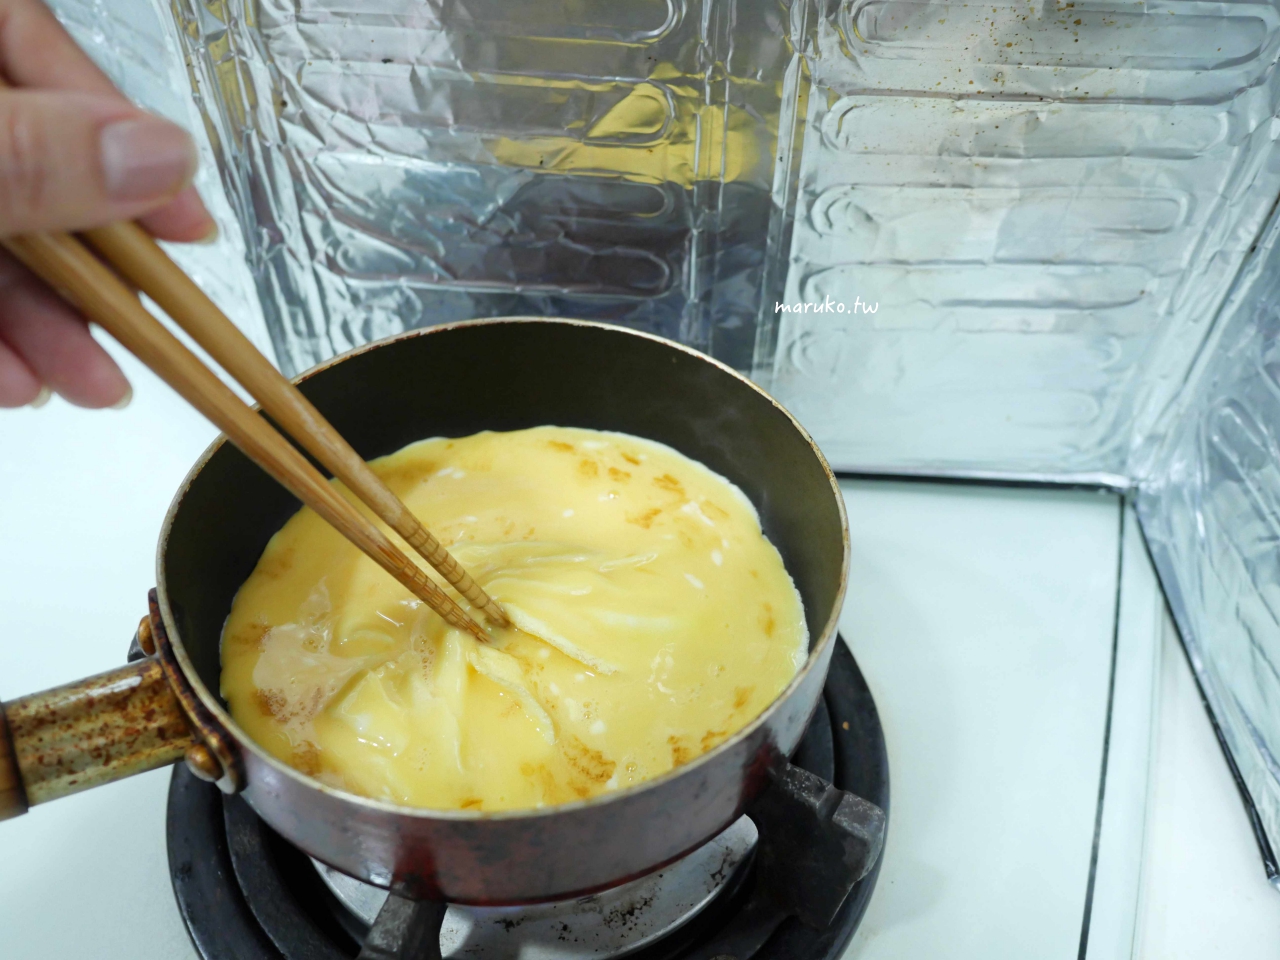 【食譜】韓式嫩蛋吐司 如何做超滑嫩的雞蛋三明治 小技巧分享 @Maruko與美食有個約會